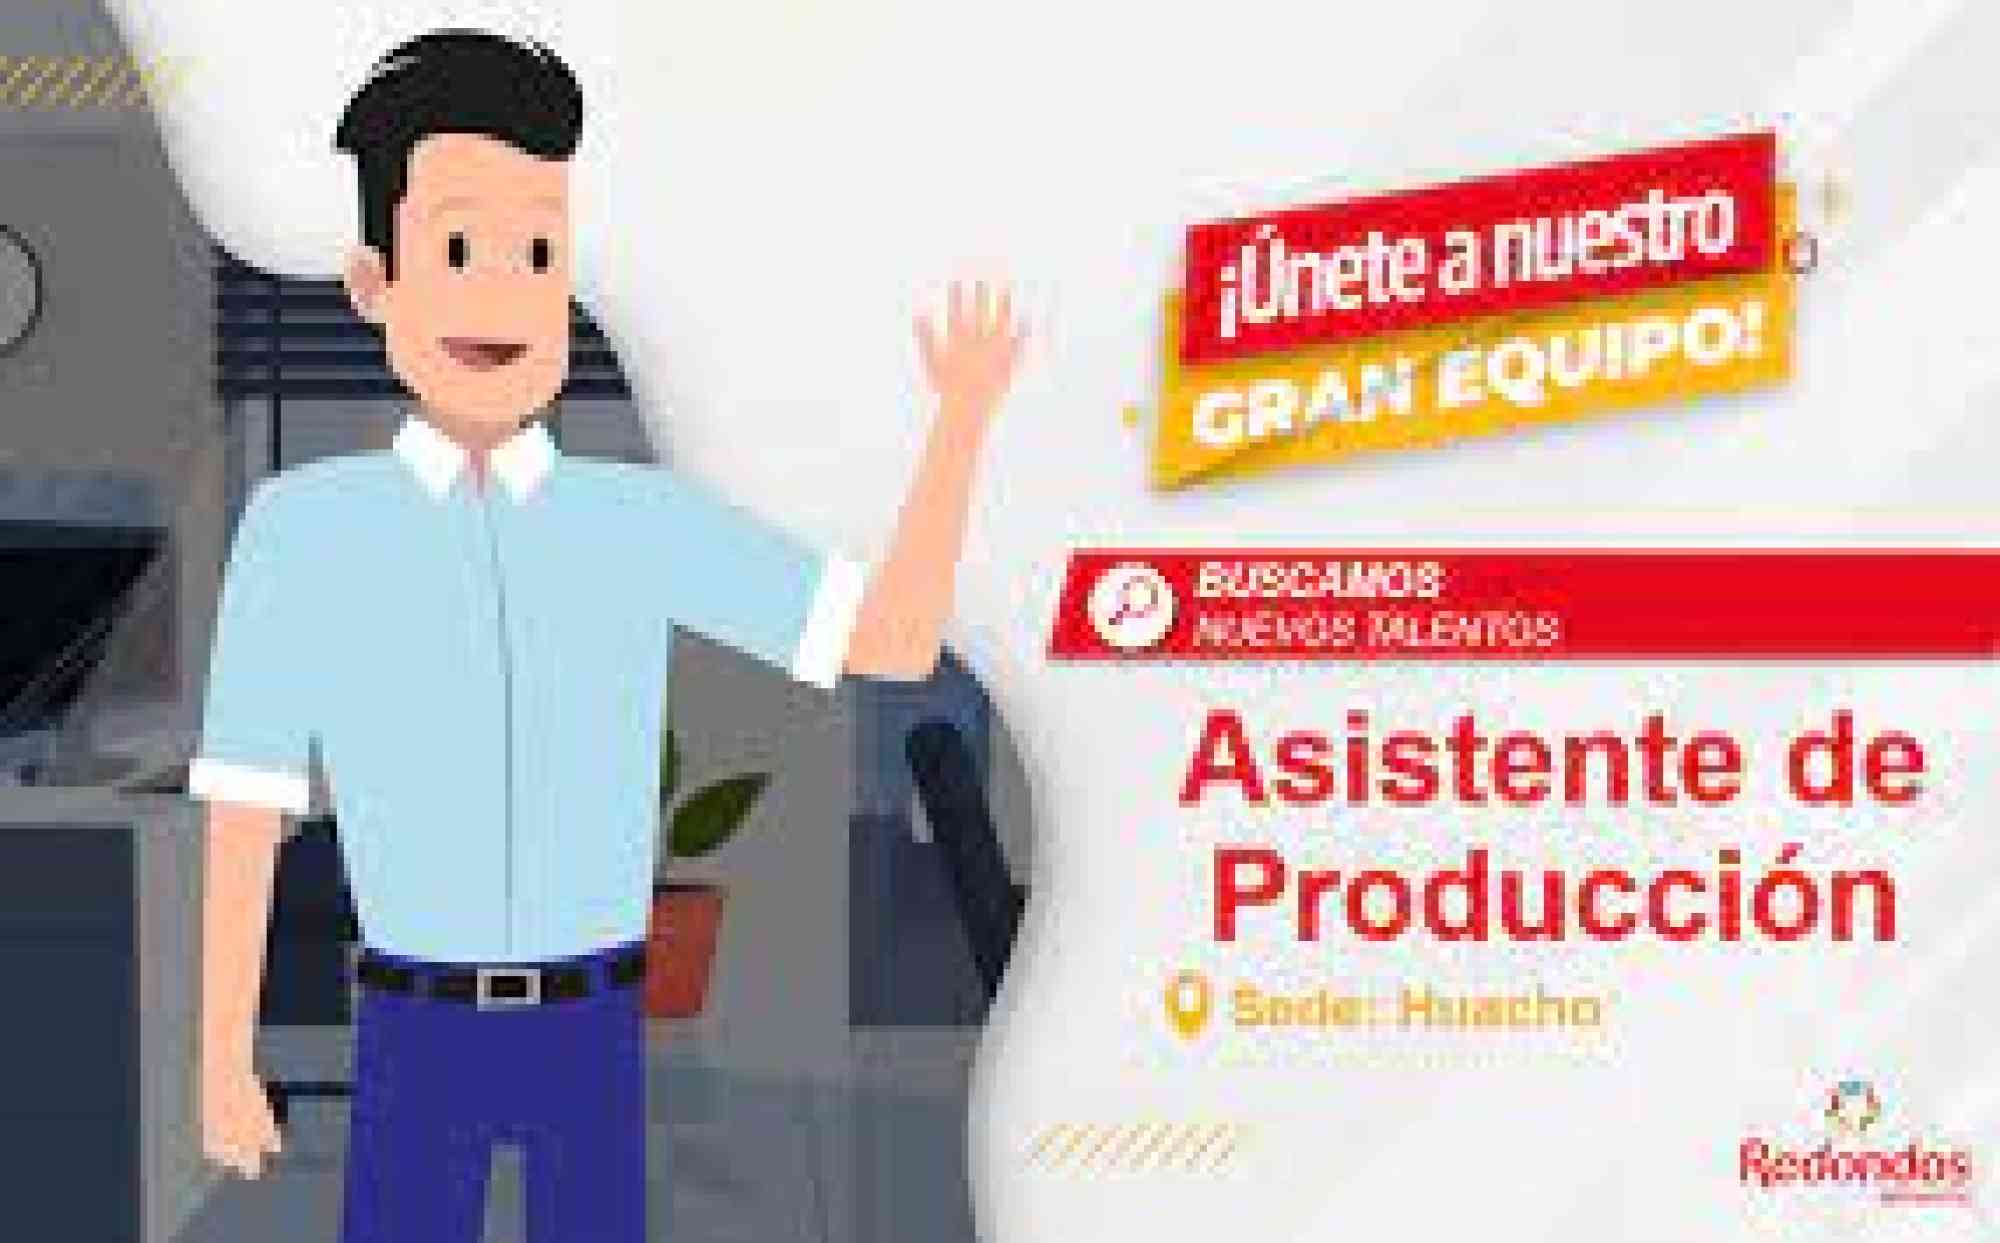 Bolsa de trabajo y anuncios de empleos en Perú., Operarios de Producción csin Experiencia Ate